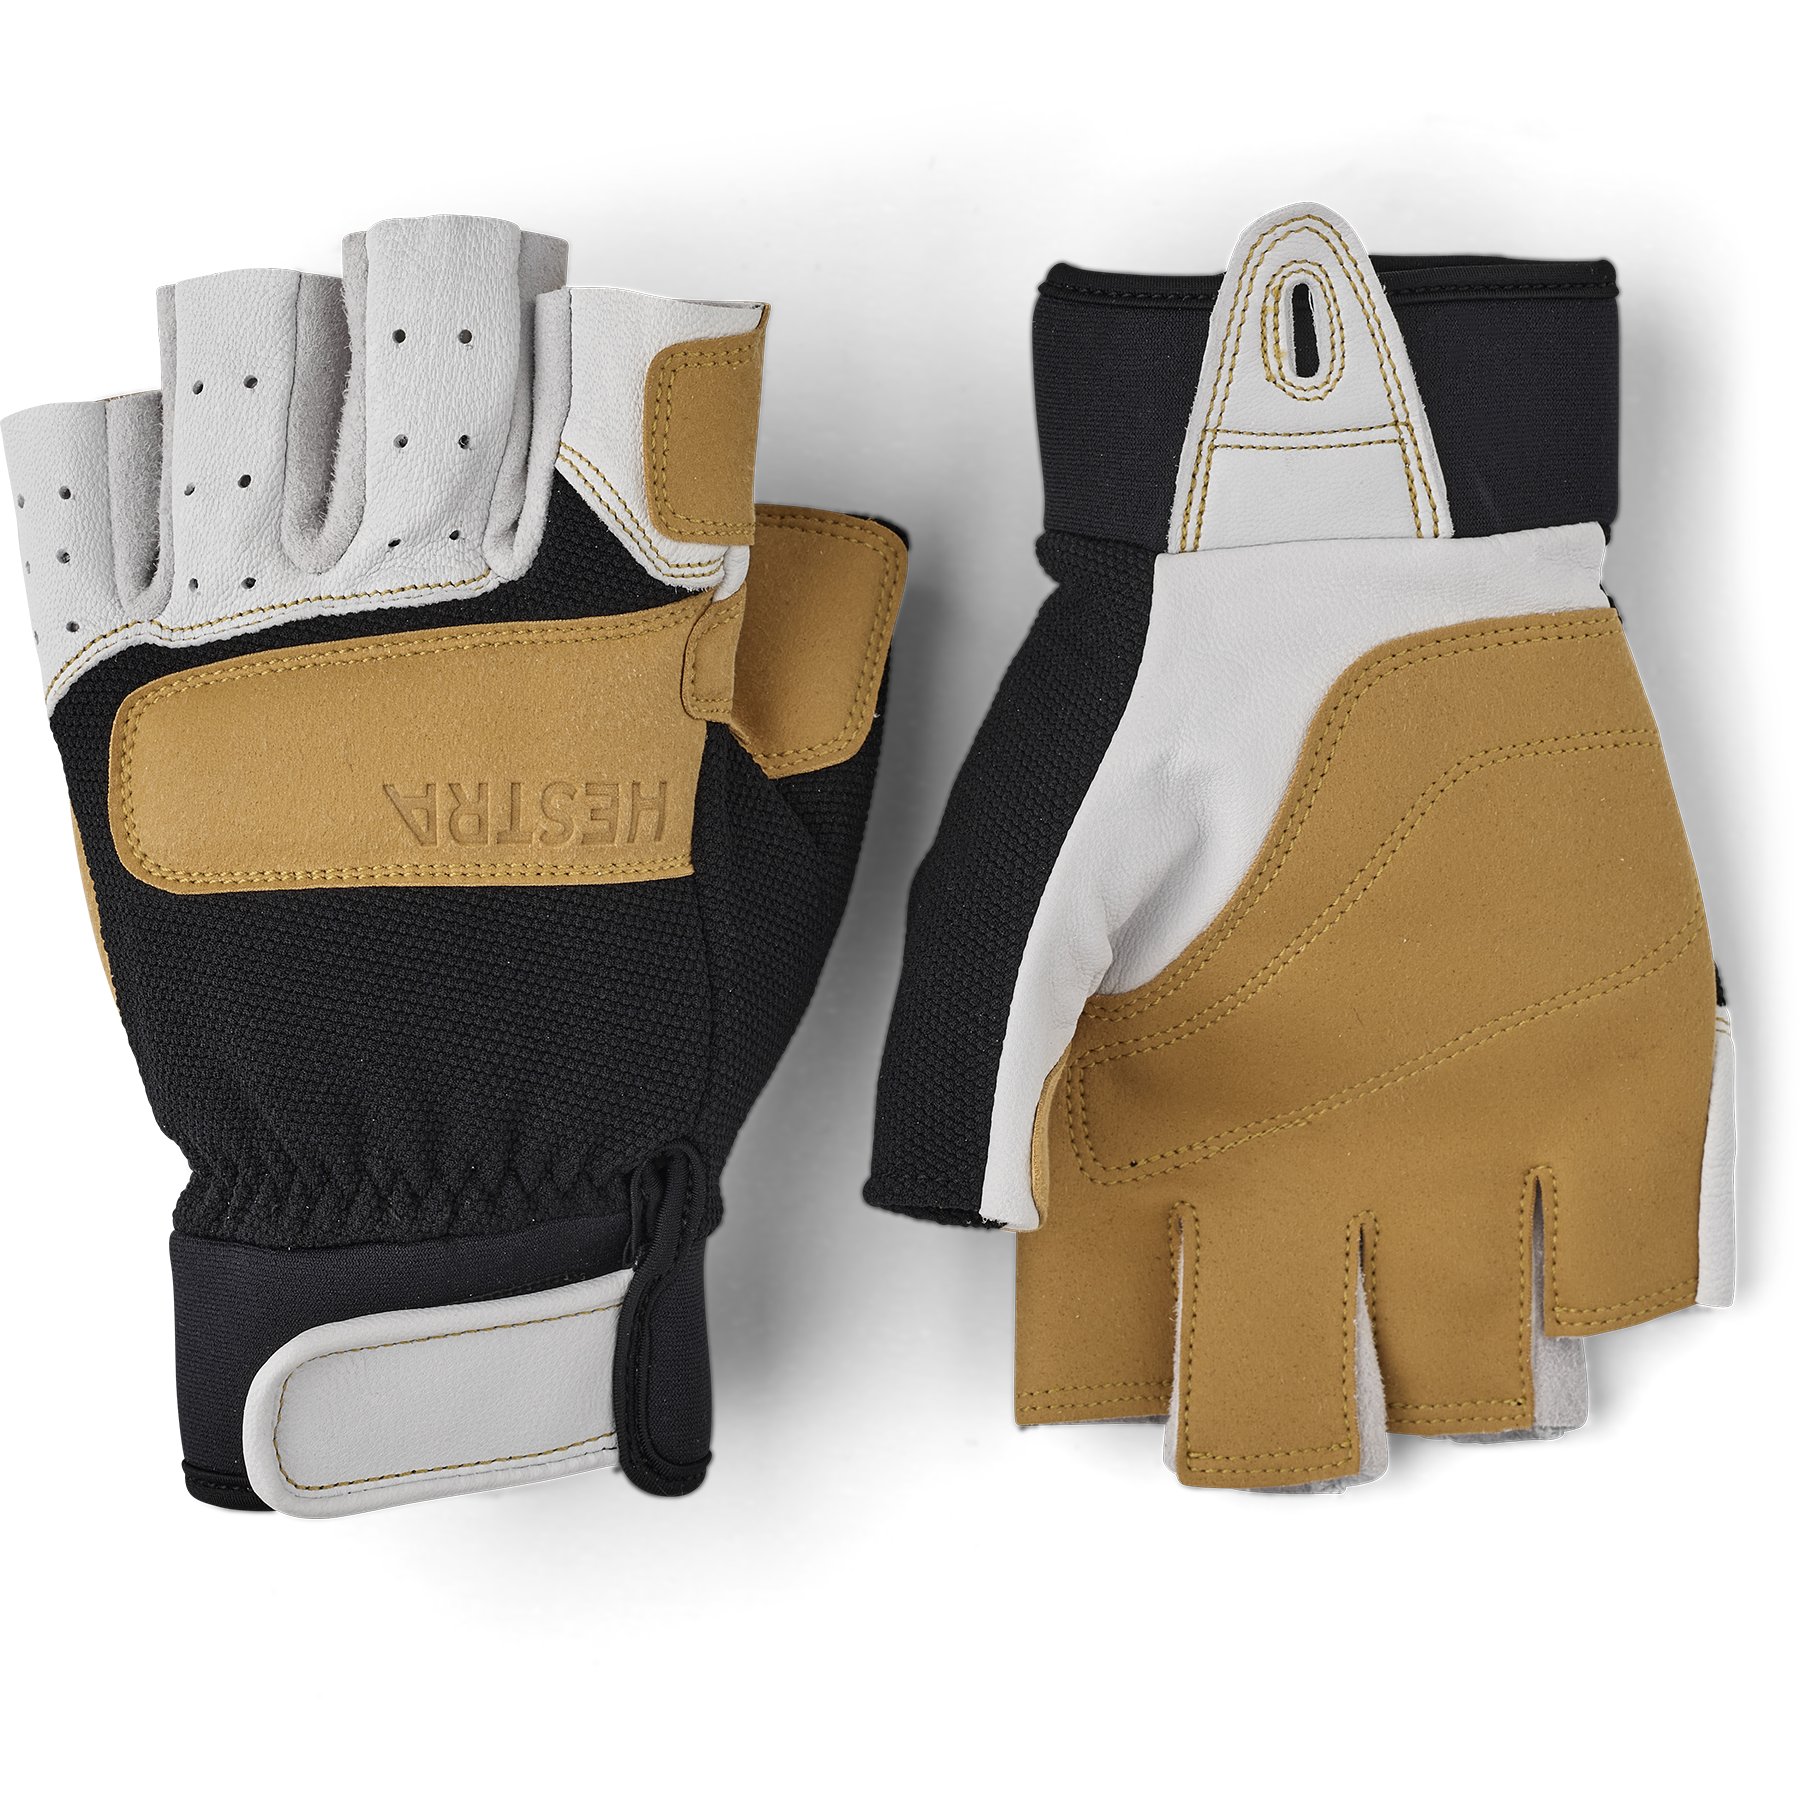 Productfoto van Hestra Climbers Short - 5 Finger Handschoenen - offwhite / black